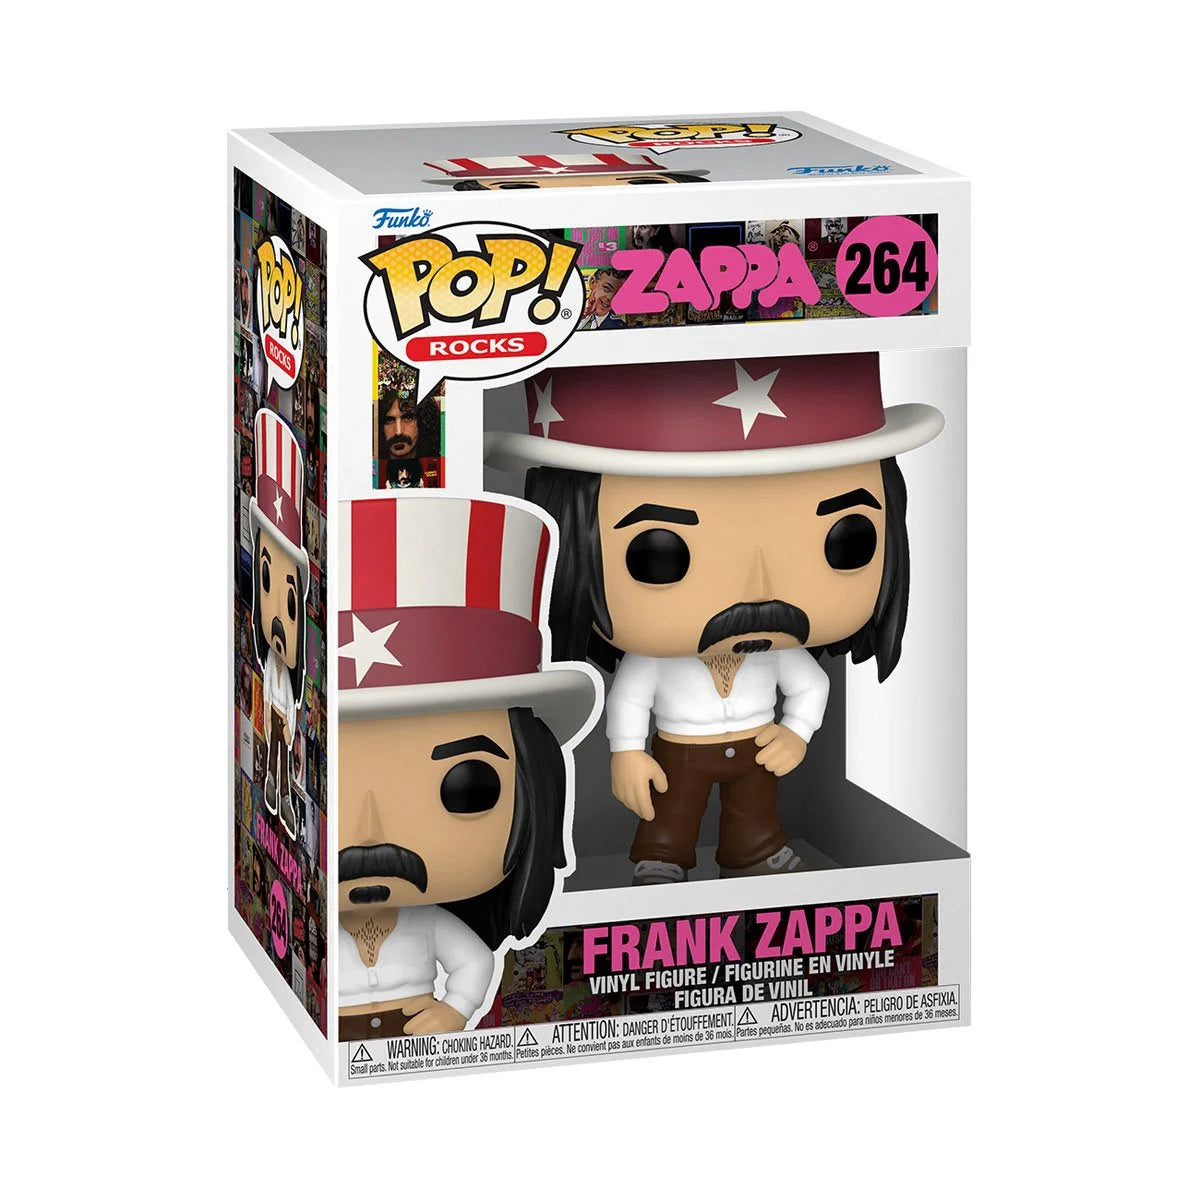 Frank Zappa Pop! Vinyl Figure - D-Pop